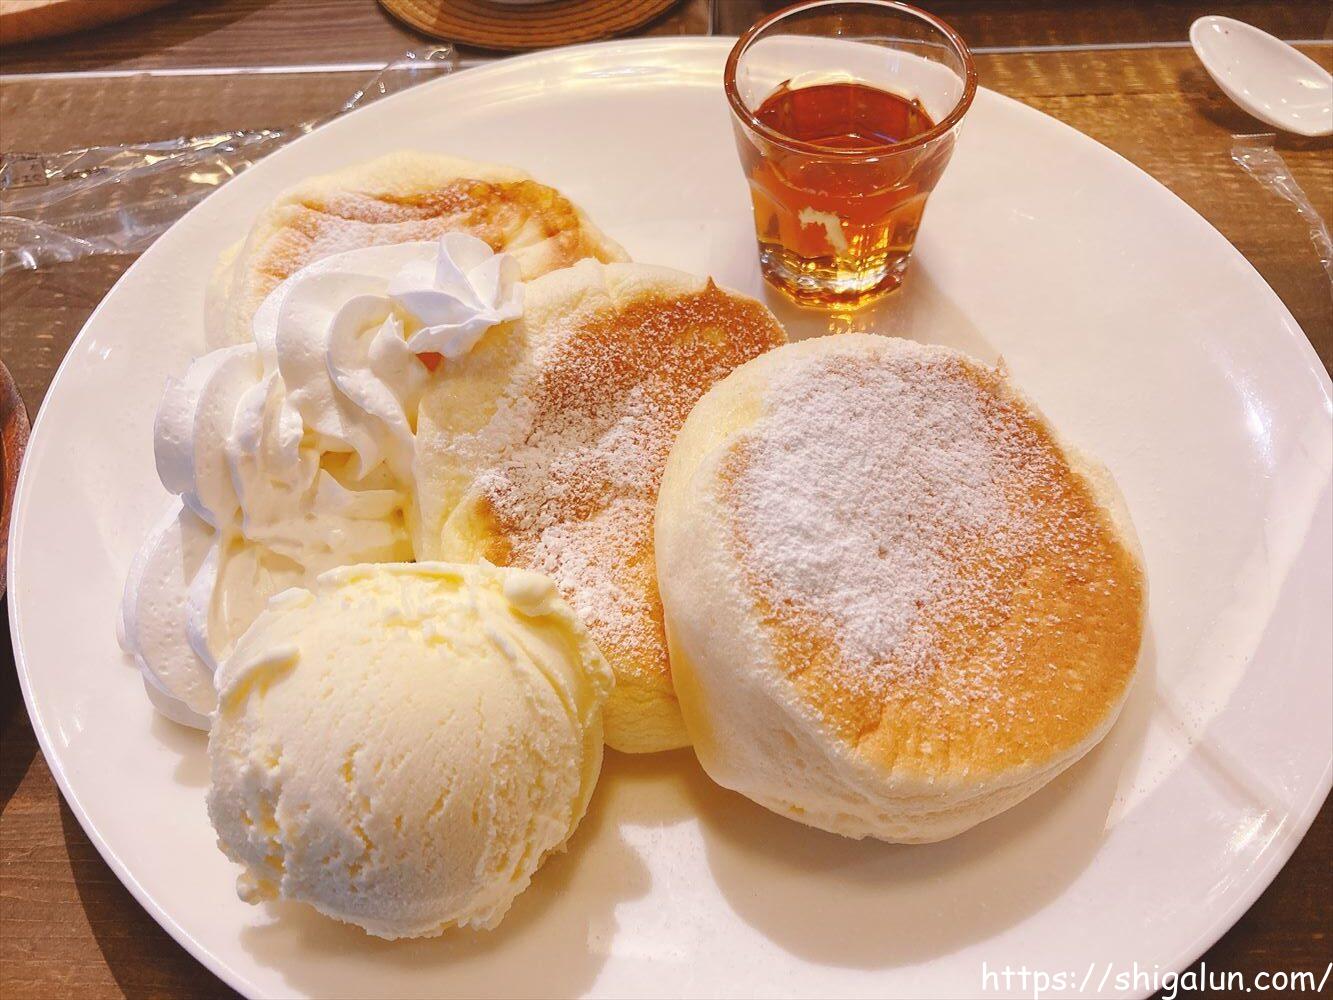 ナルカフェnalu cafeのふわふわパンケーキ食べてみた！